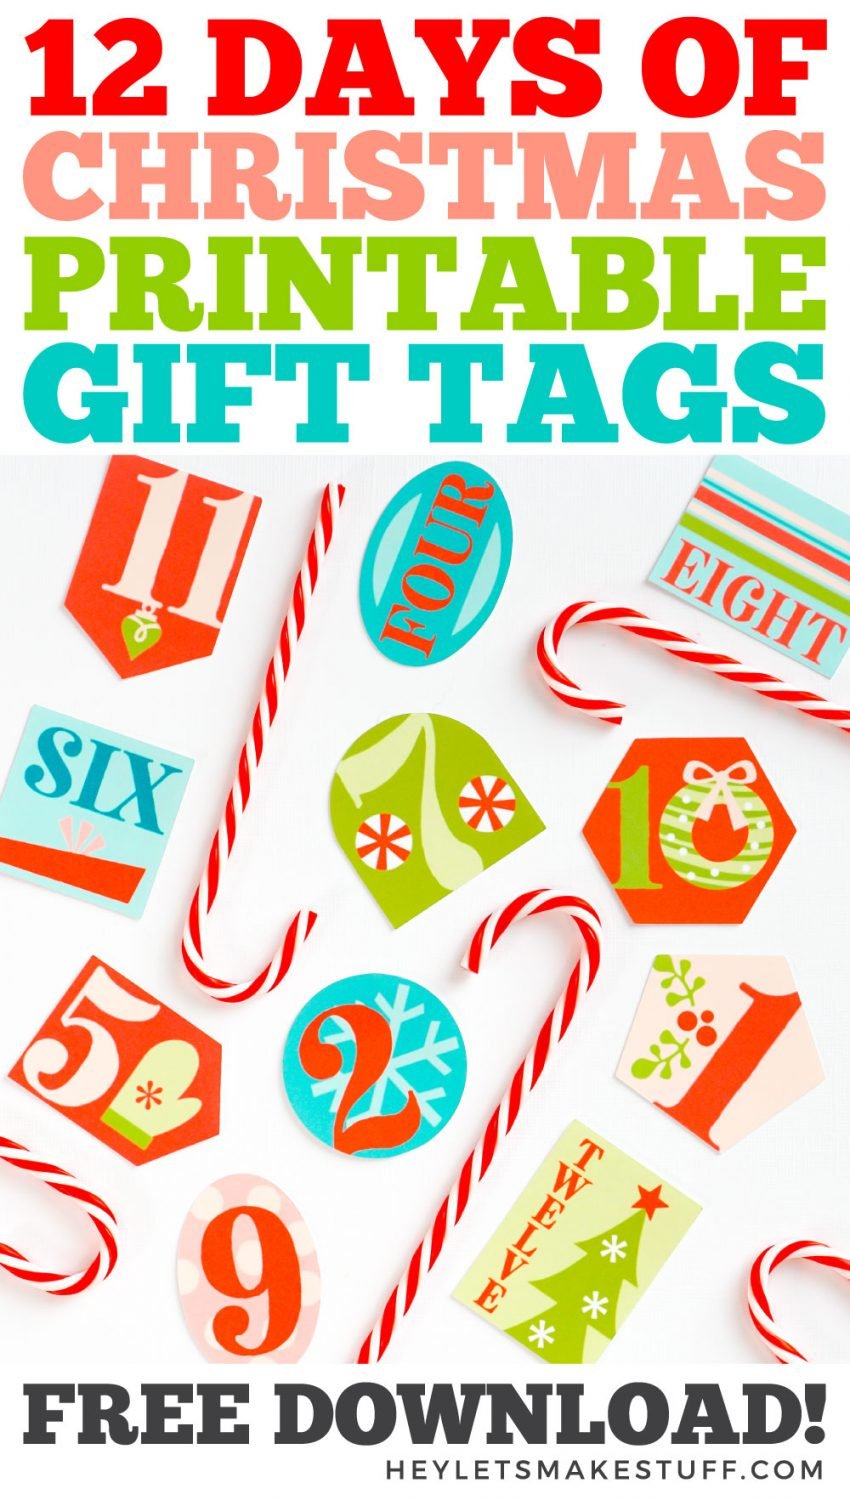 12 Days of Christmas Printable Gift Tags pin image